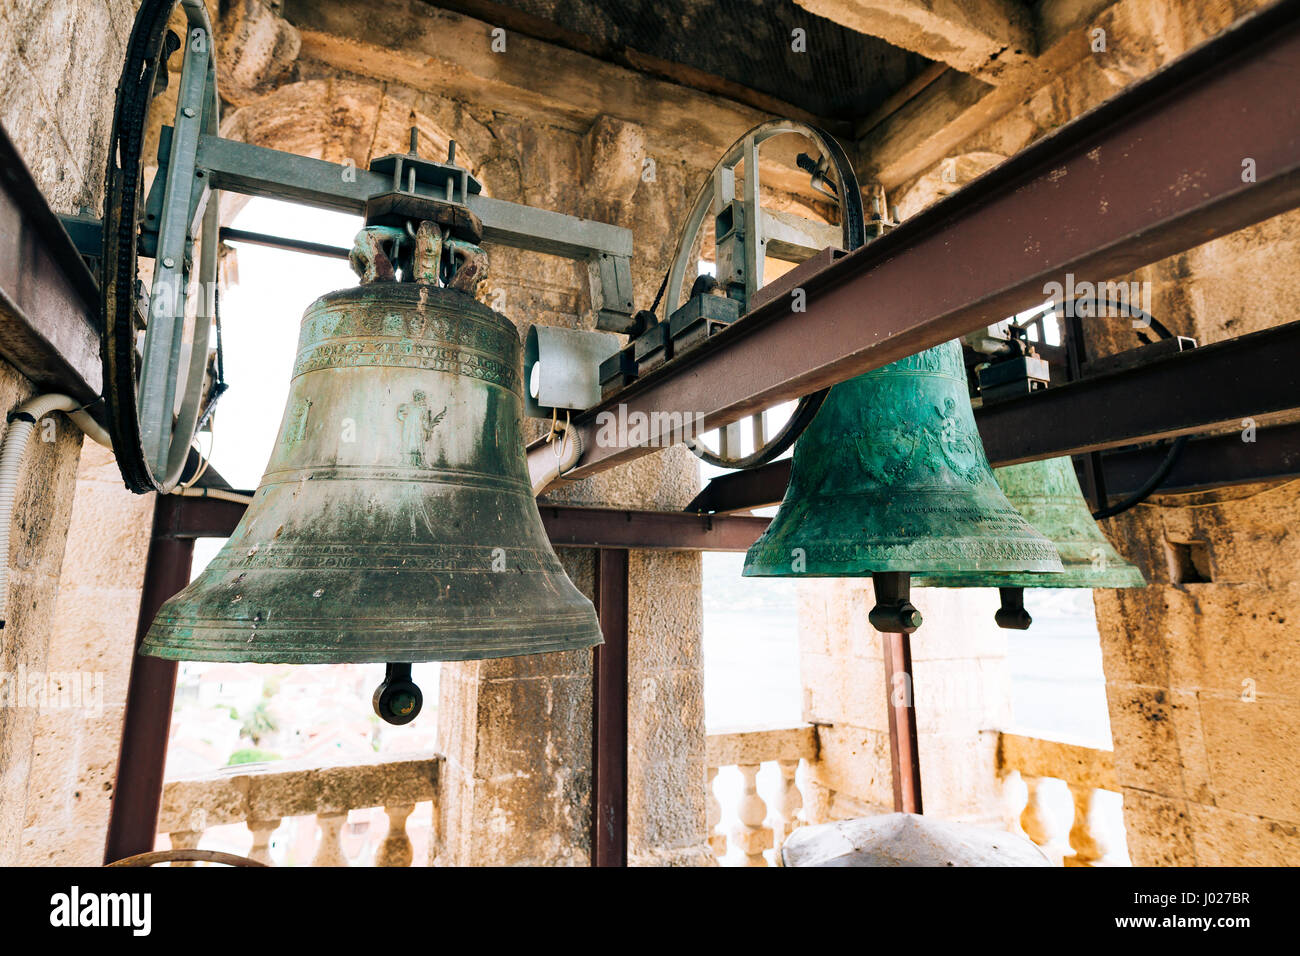 Die Glocken in der Kapelle. Vintage alte große Glocken im Glockenturm neben der Kirche in Kroatien und Montenegro. Stockfoto